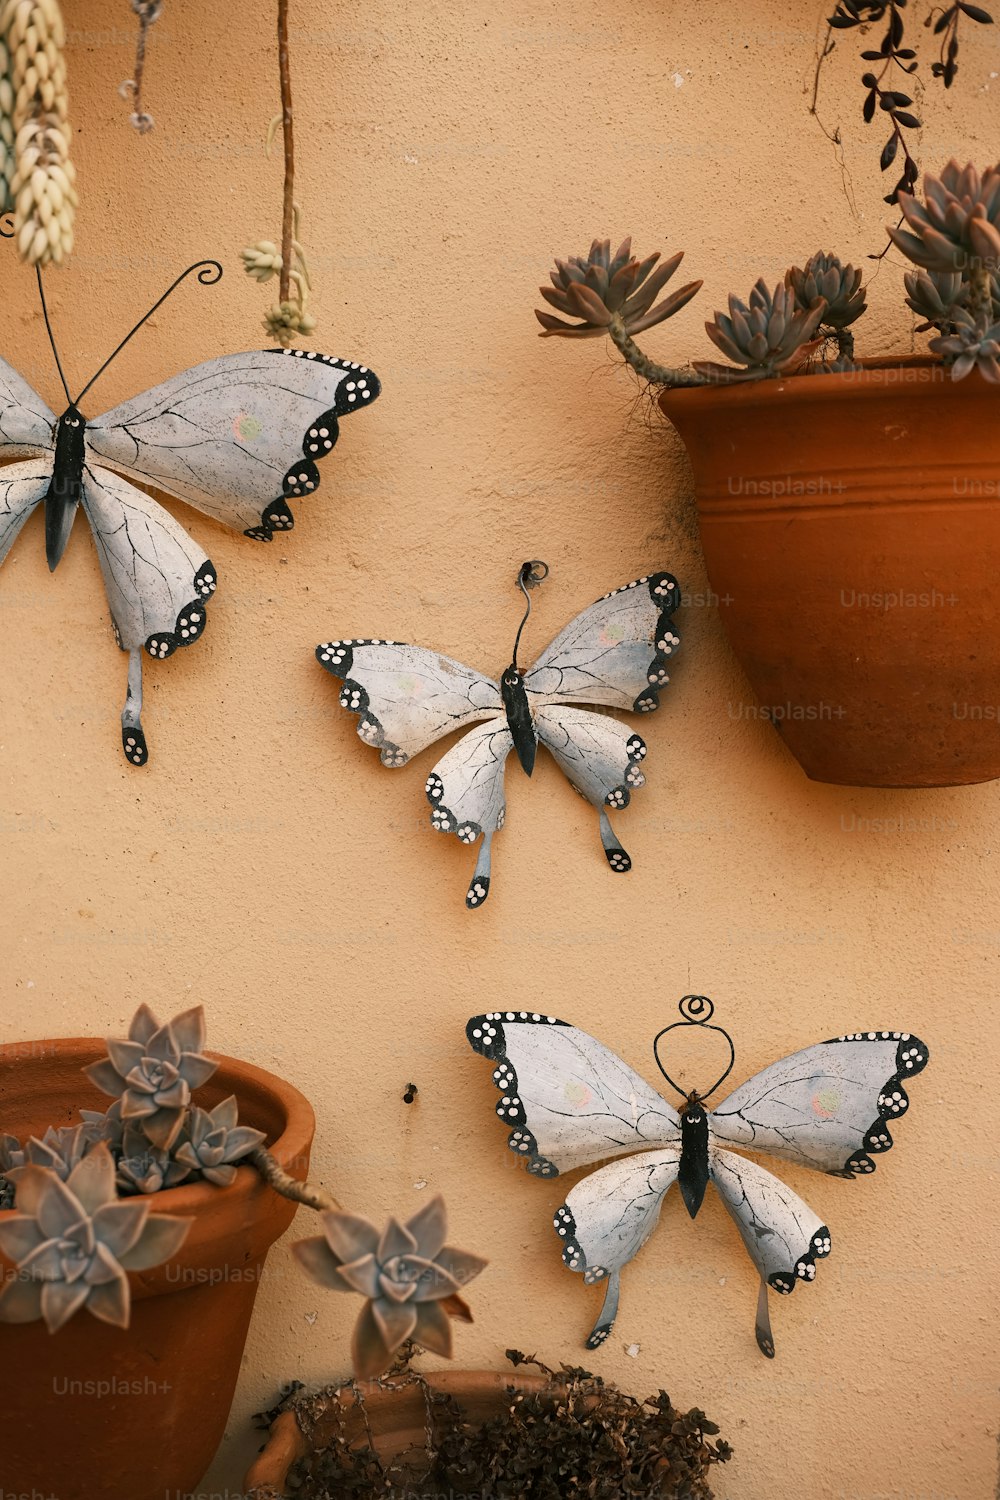 Tres mariposas cuelgan de una pared junto a una planta en maceta